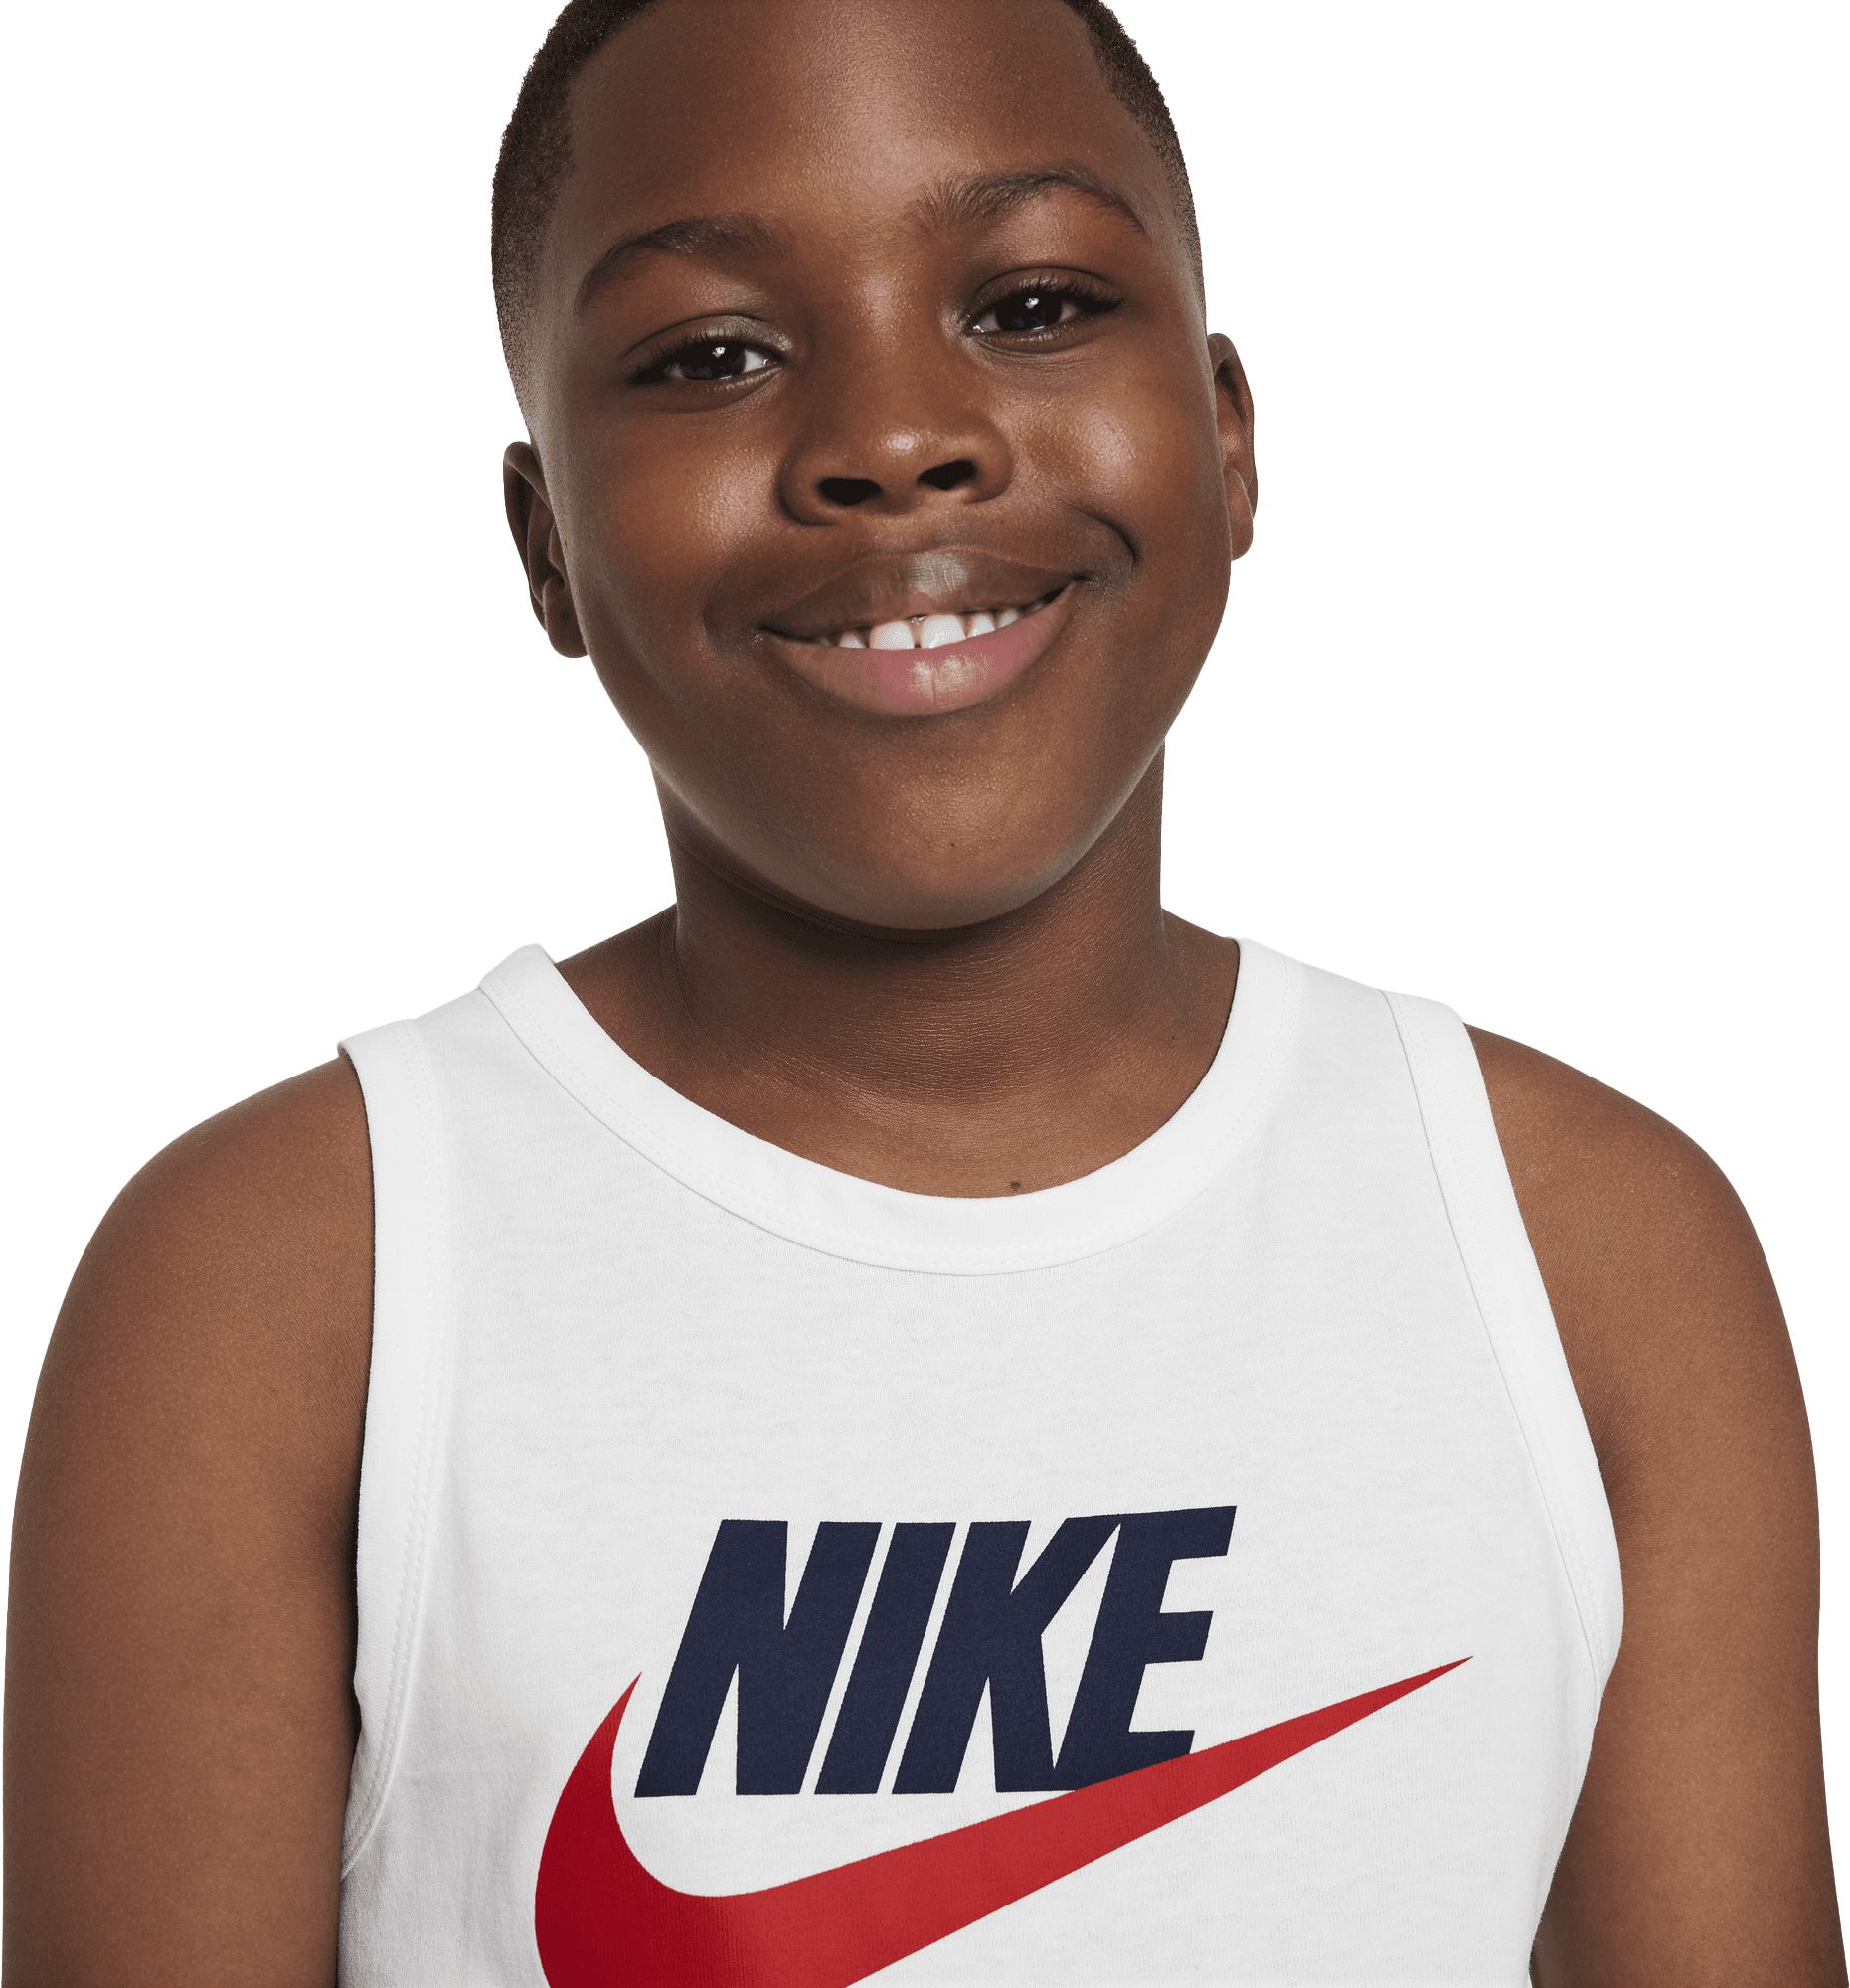 NIKE, Nike Sportswear Big Kids' Tank Top